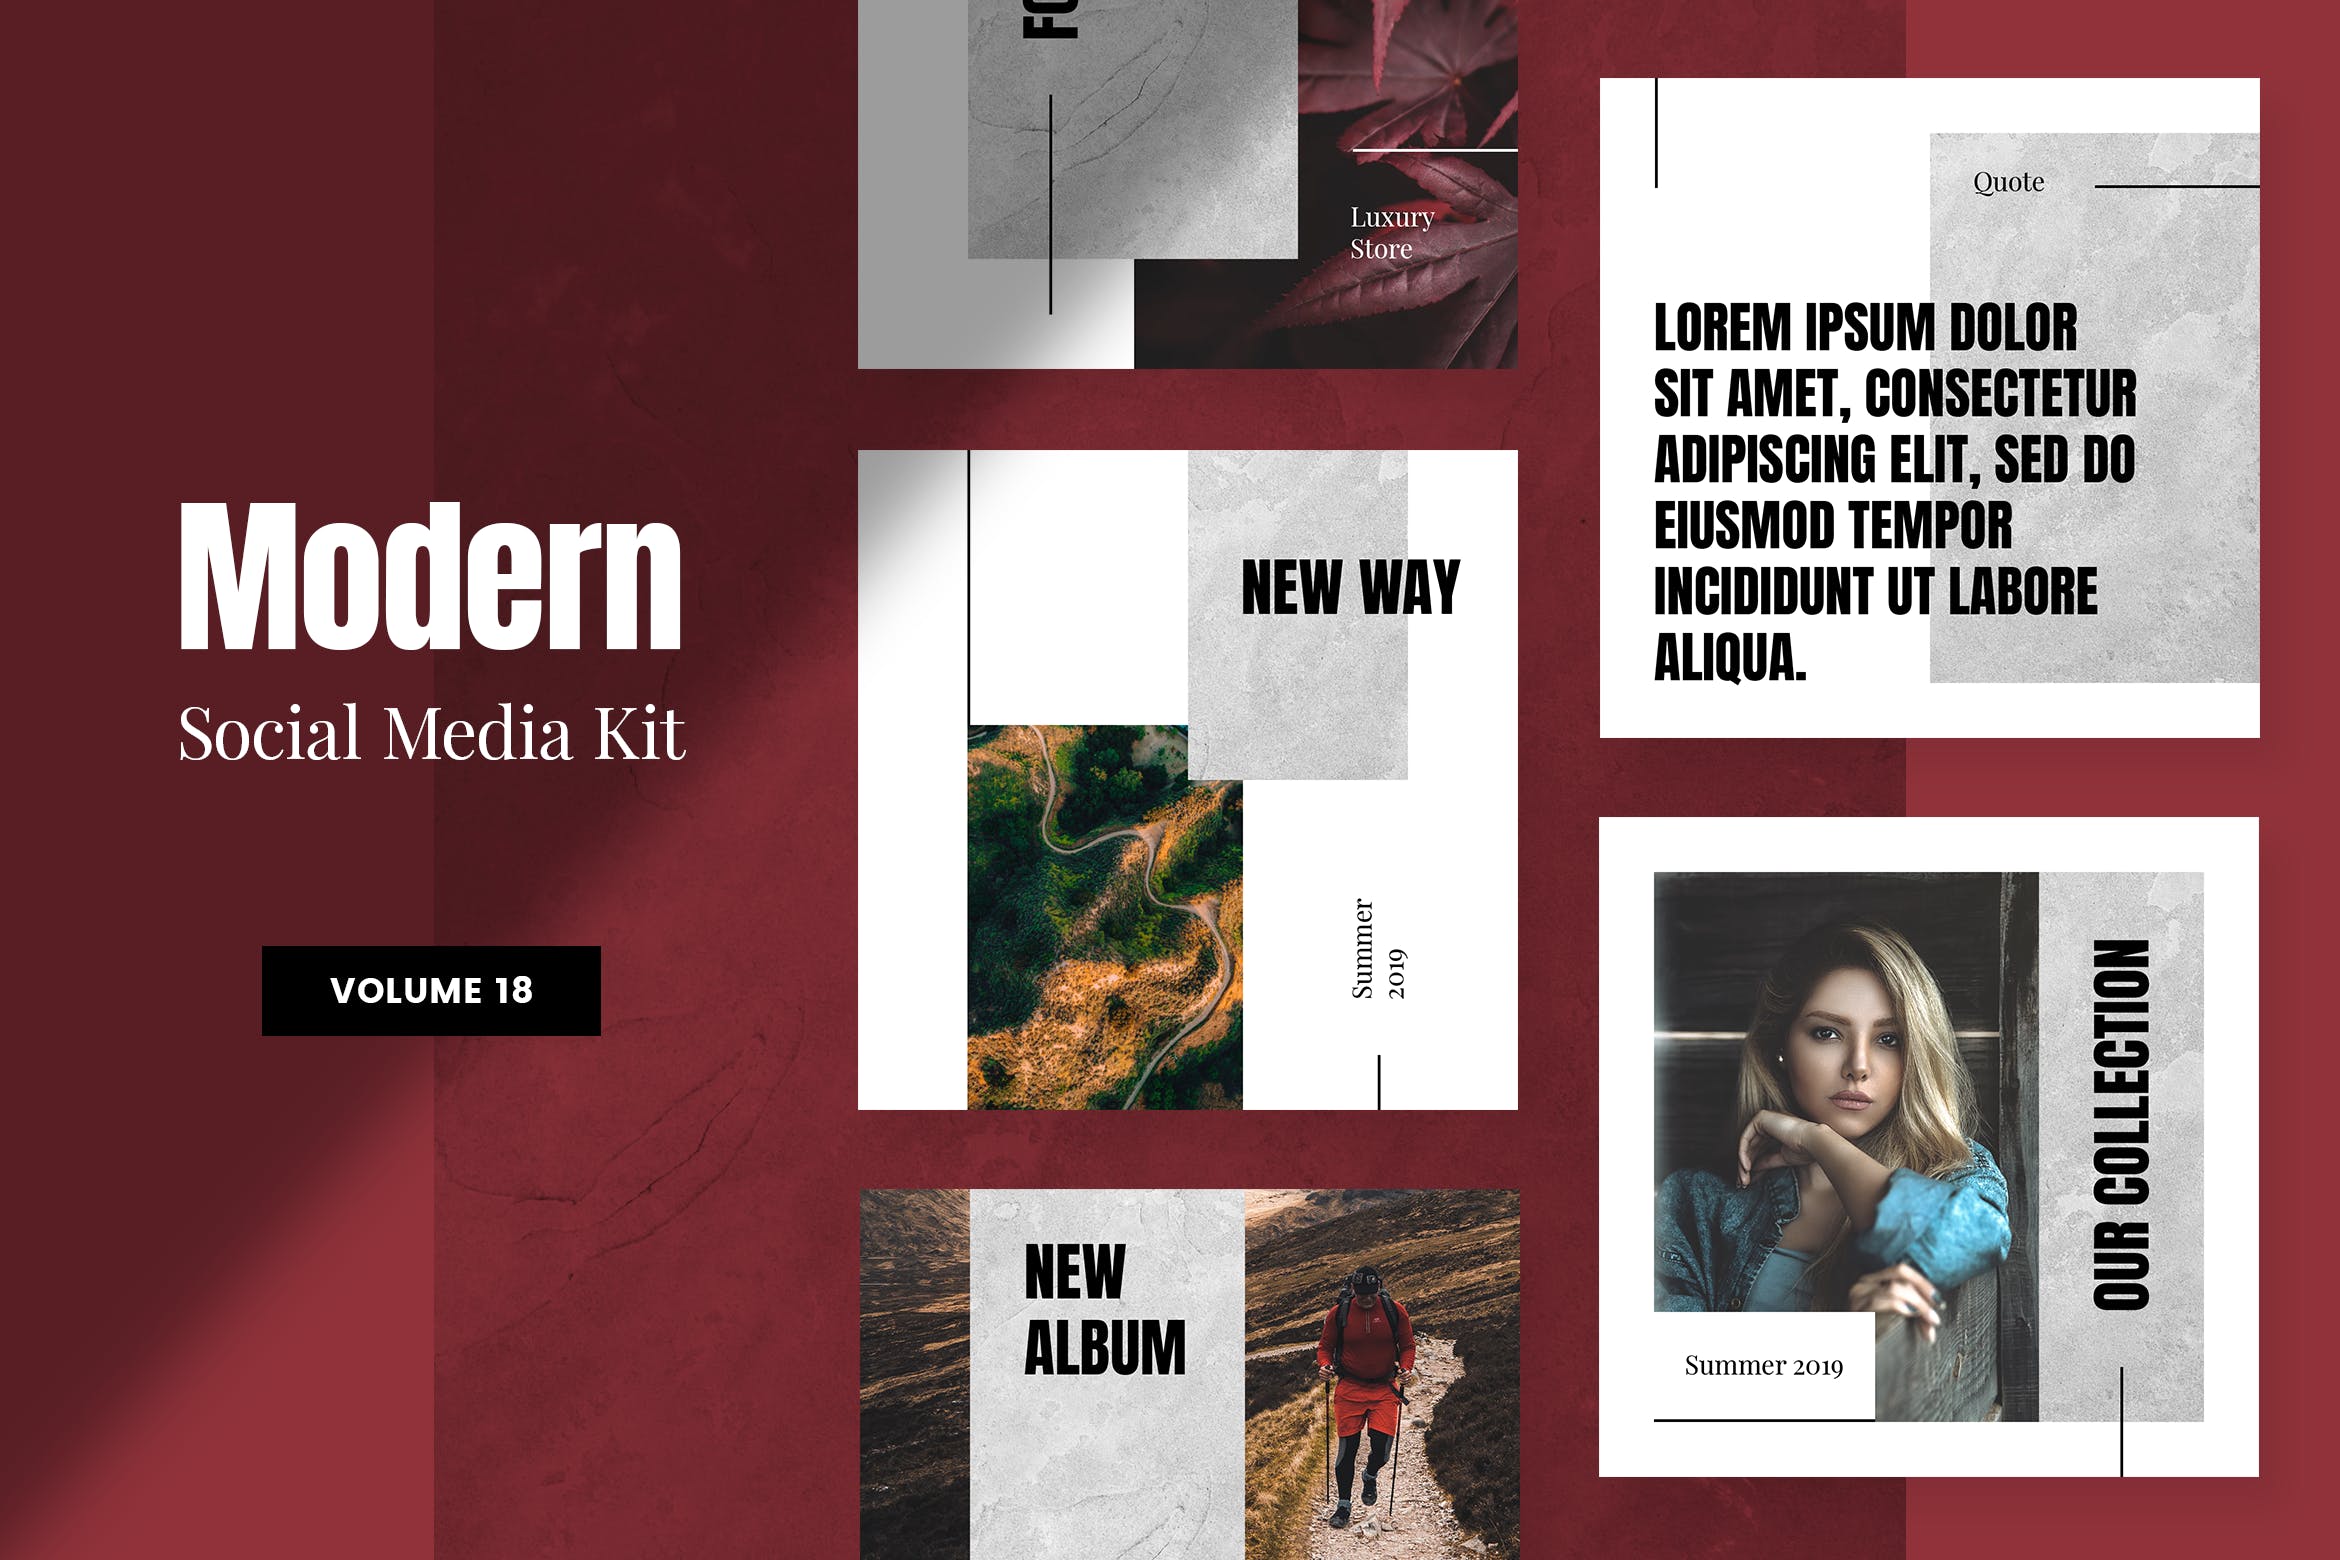 现代风格社交媒体品牌推广设计模板素材库精选v18 Modern Social Media Kit (Vol. 18)插图